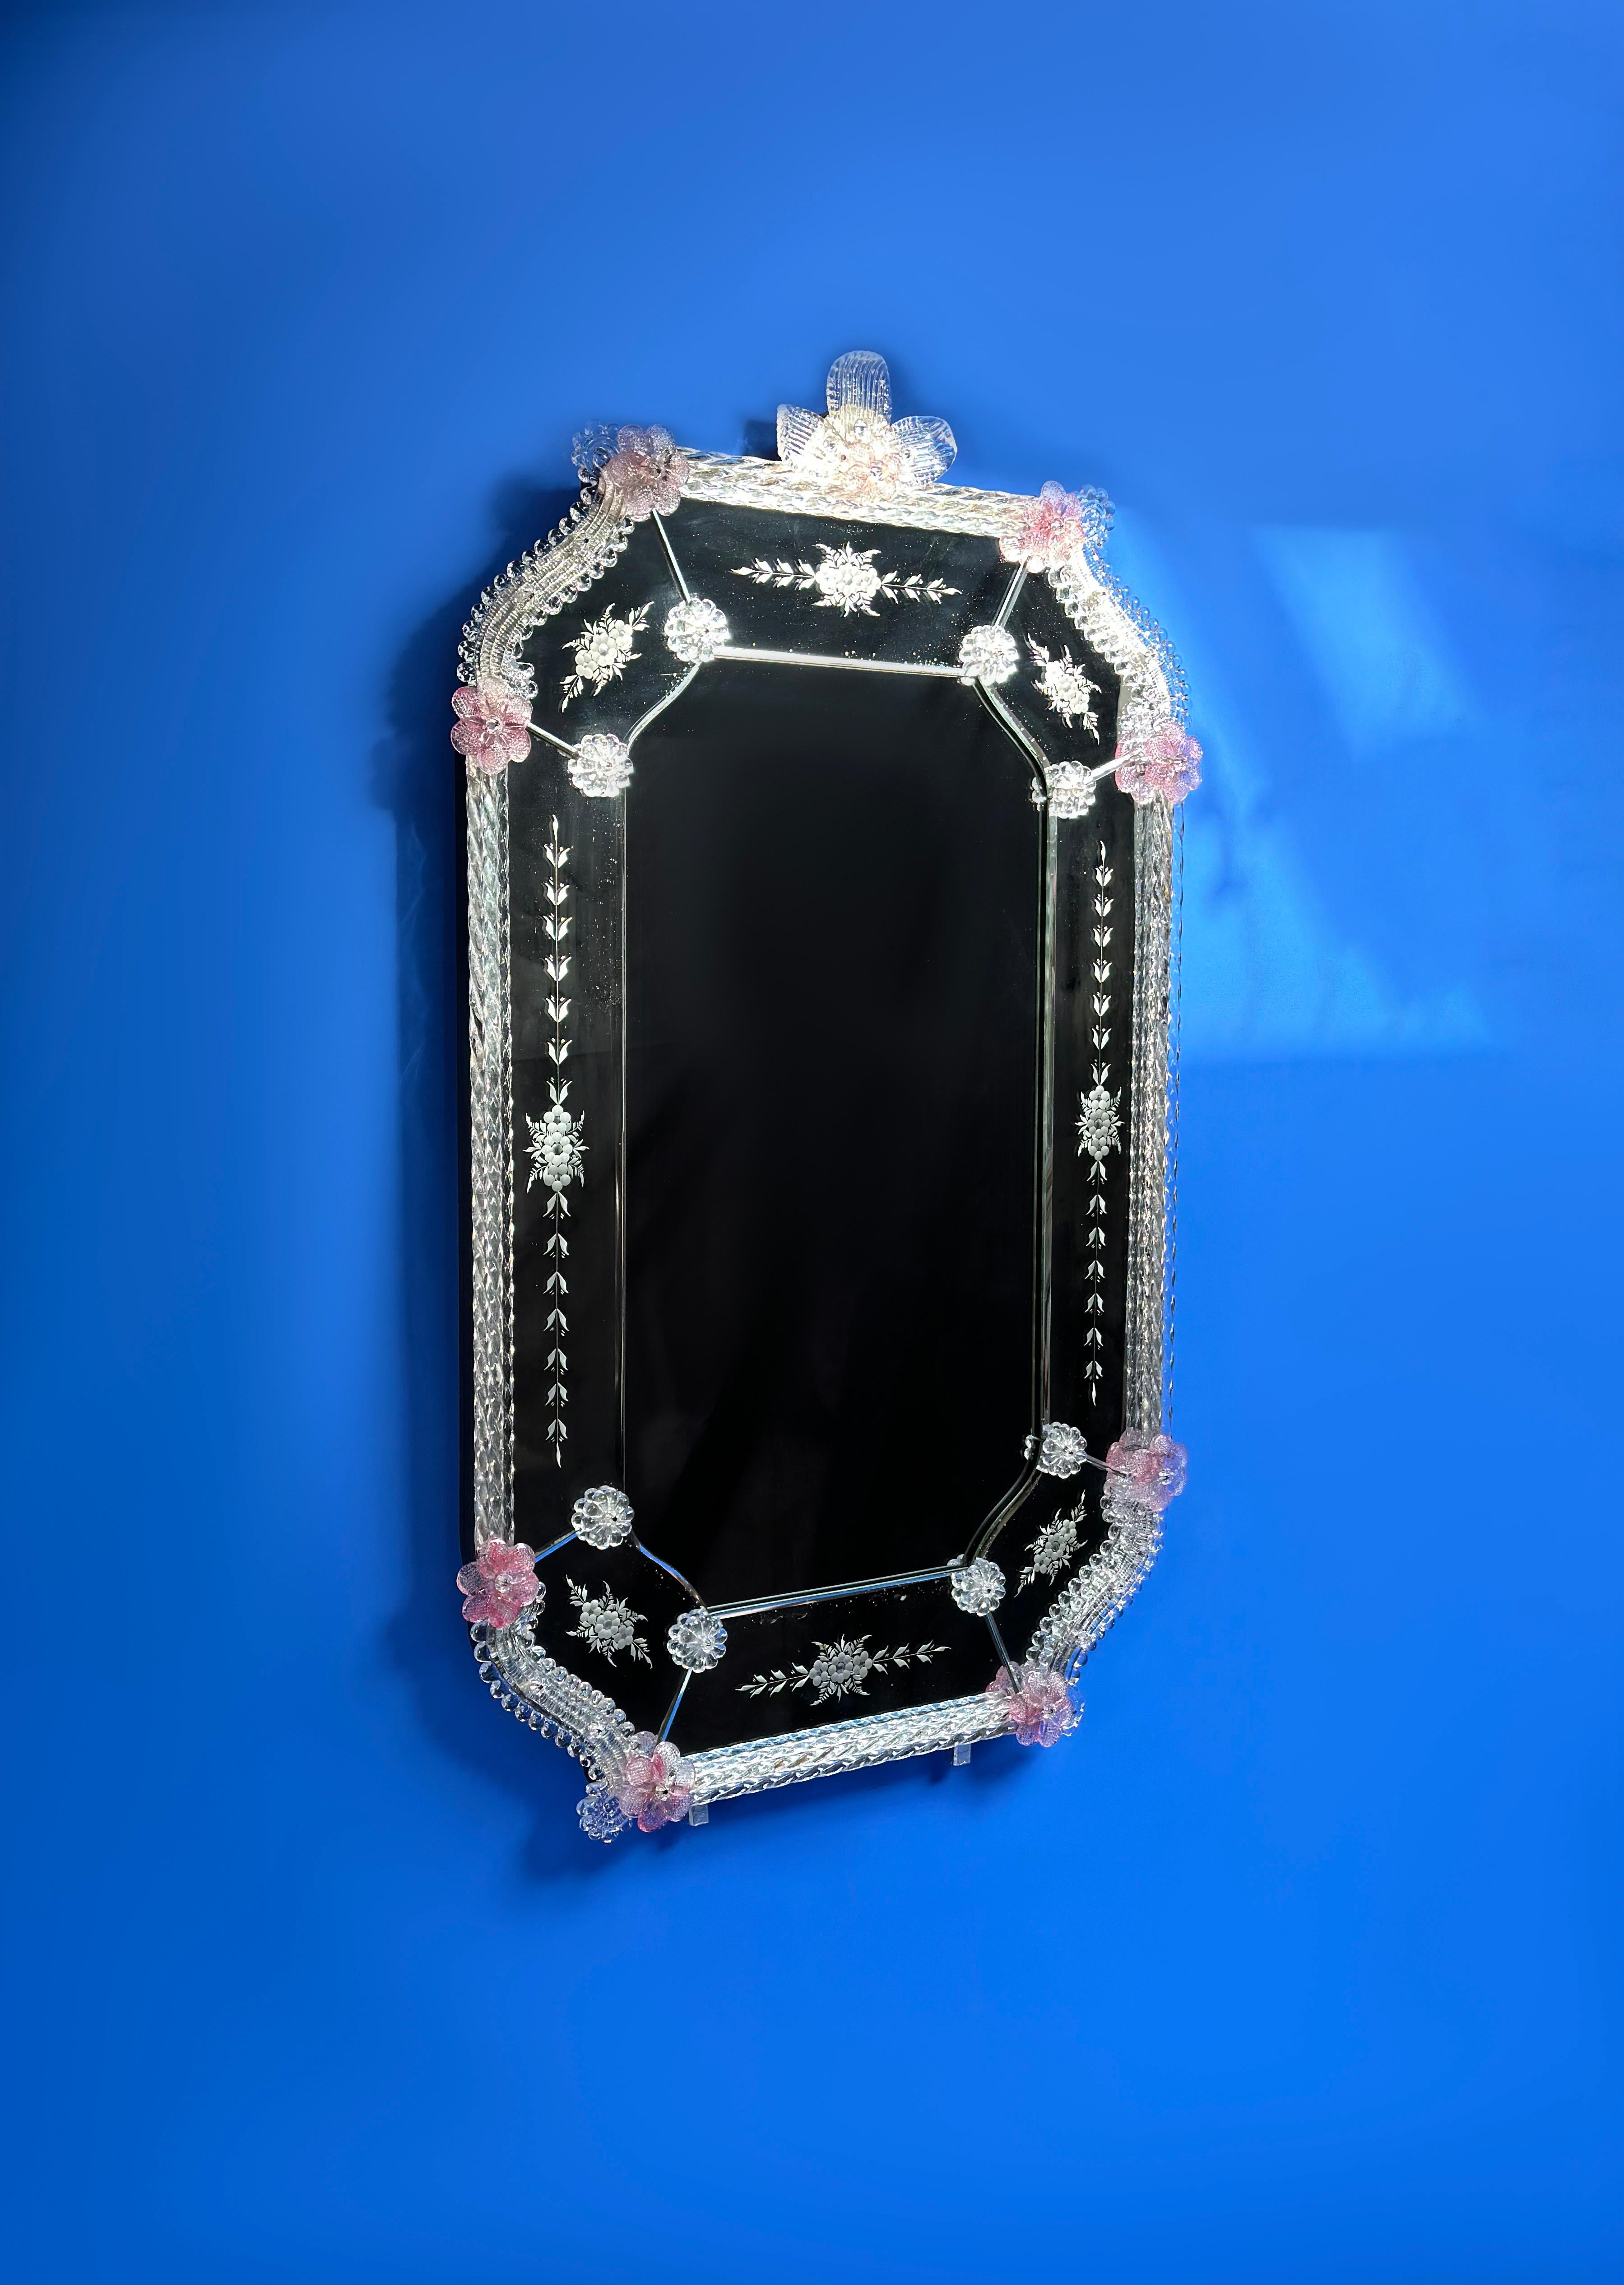 Un élégant miroir mural en verre vénitien. Fabriqué à la main à Venise dans les années 1960

Elle présente un ensemble de délicates décorations en verre, soigneusement disposées autour d'un cadre de forme octogonale.

Le miroir central est entouré